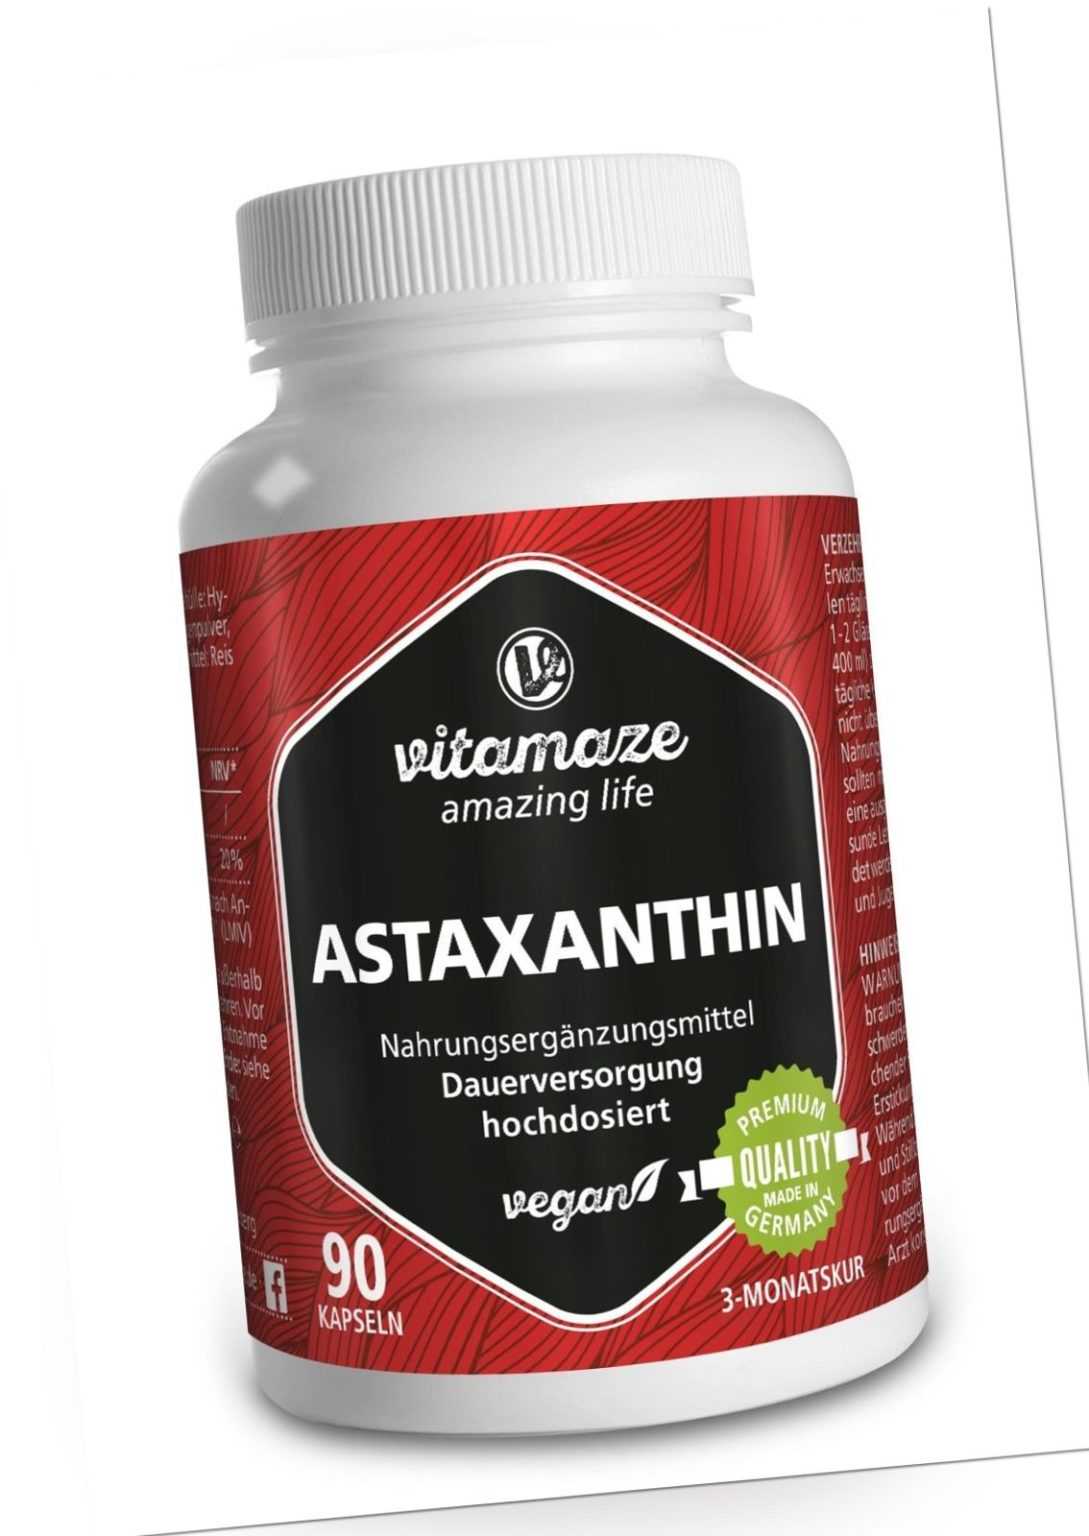 (€60,05/100g) Natürliches Astaxanthin 4 mg VEGAN, 90 Kapseln für 3 Monatsvorrat